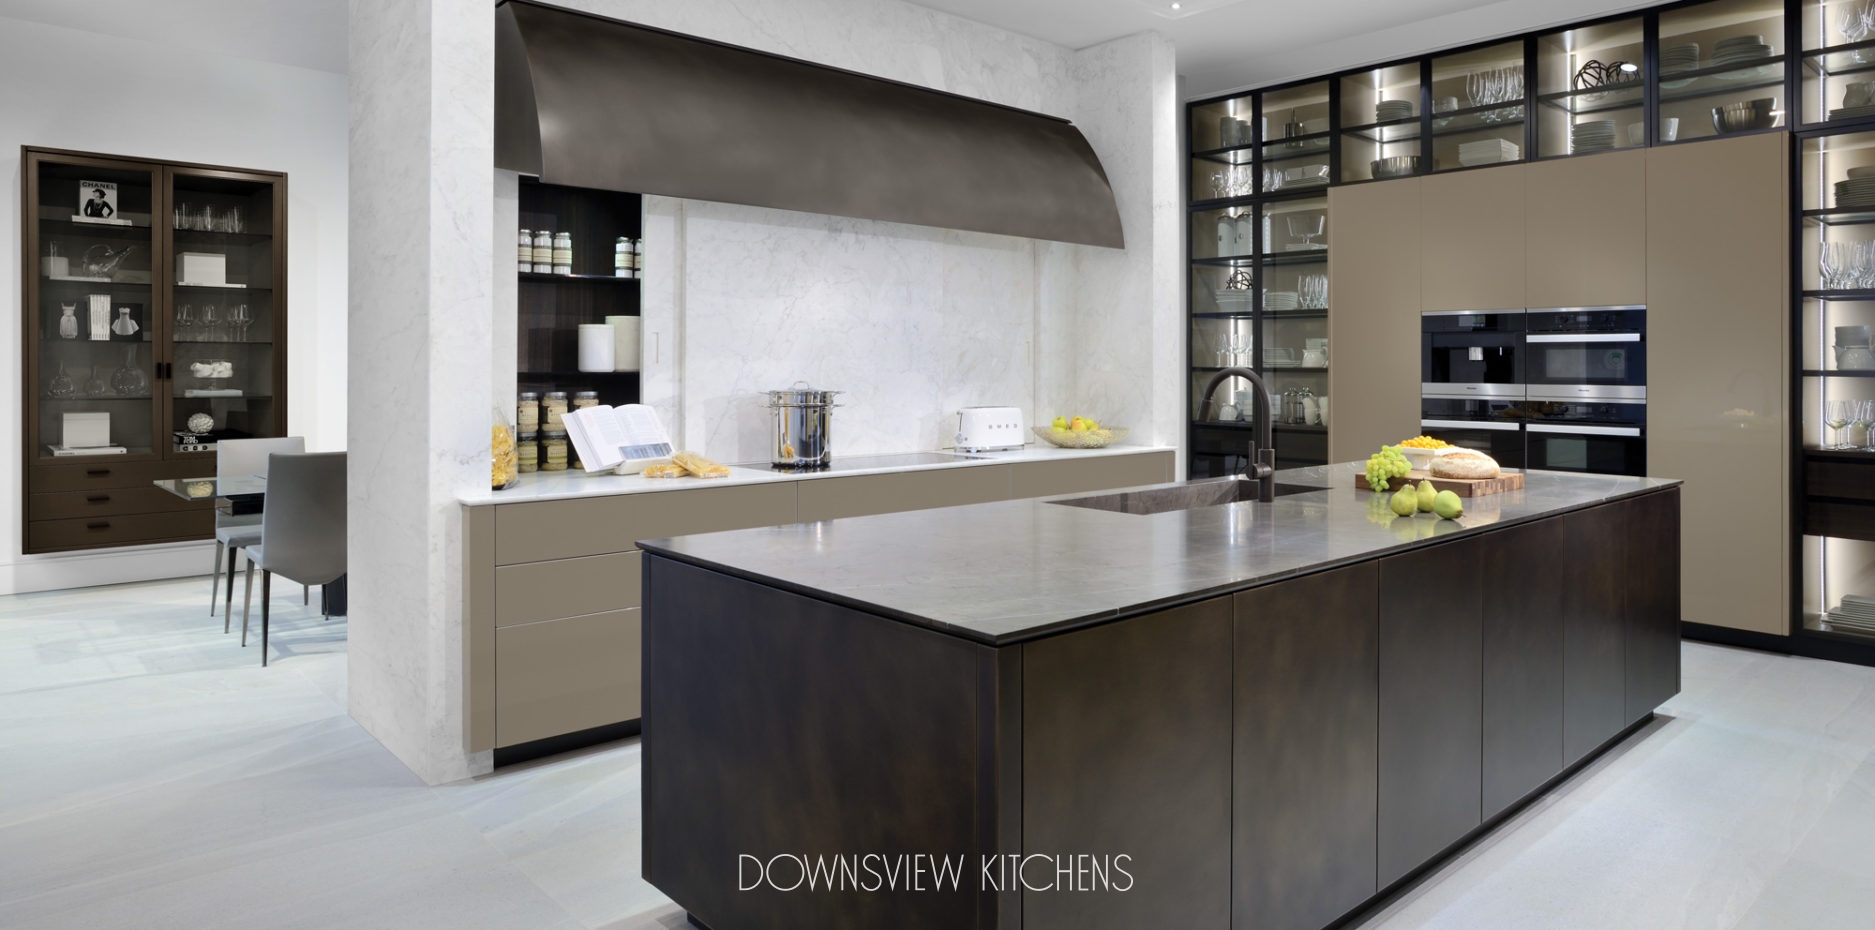 Downsview Kitchens Kitchen